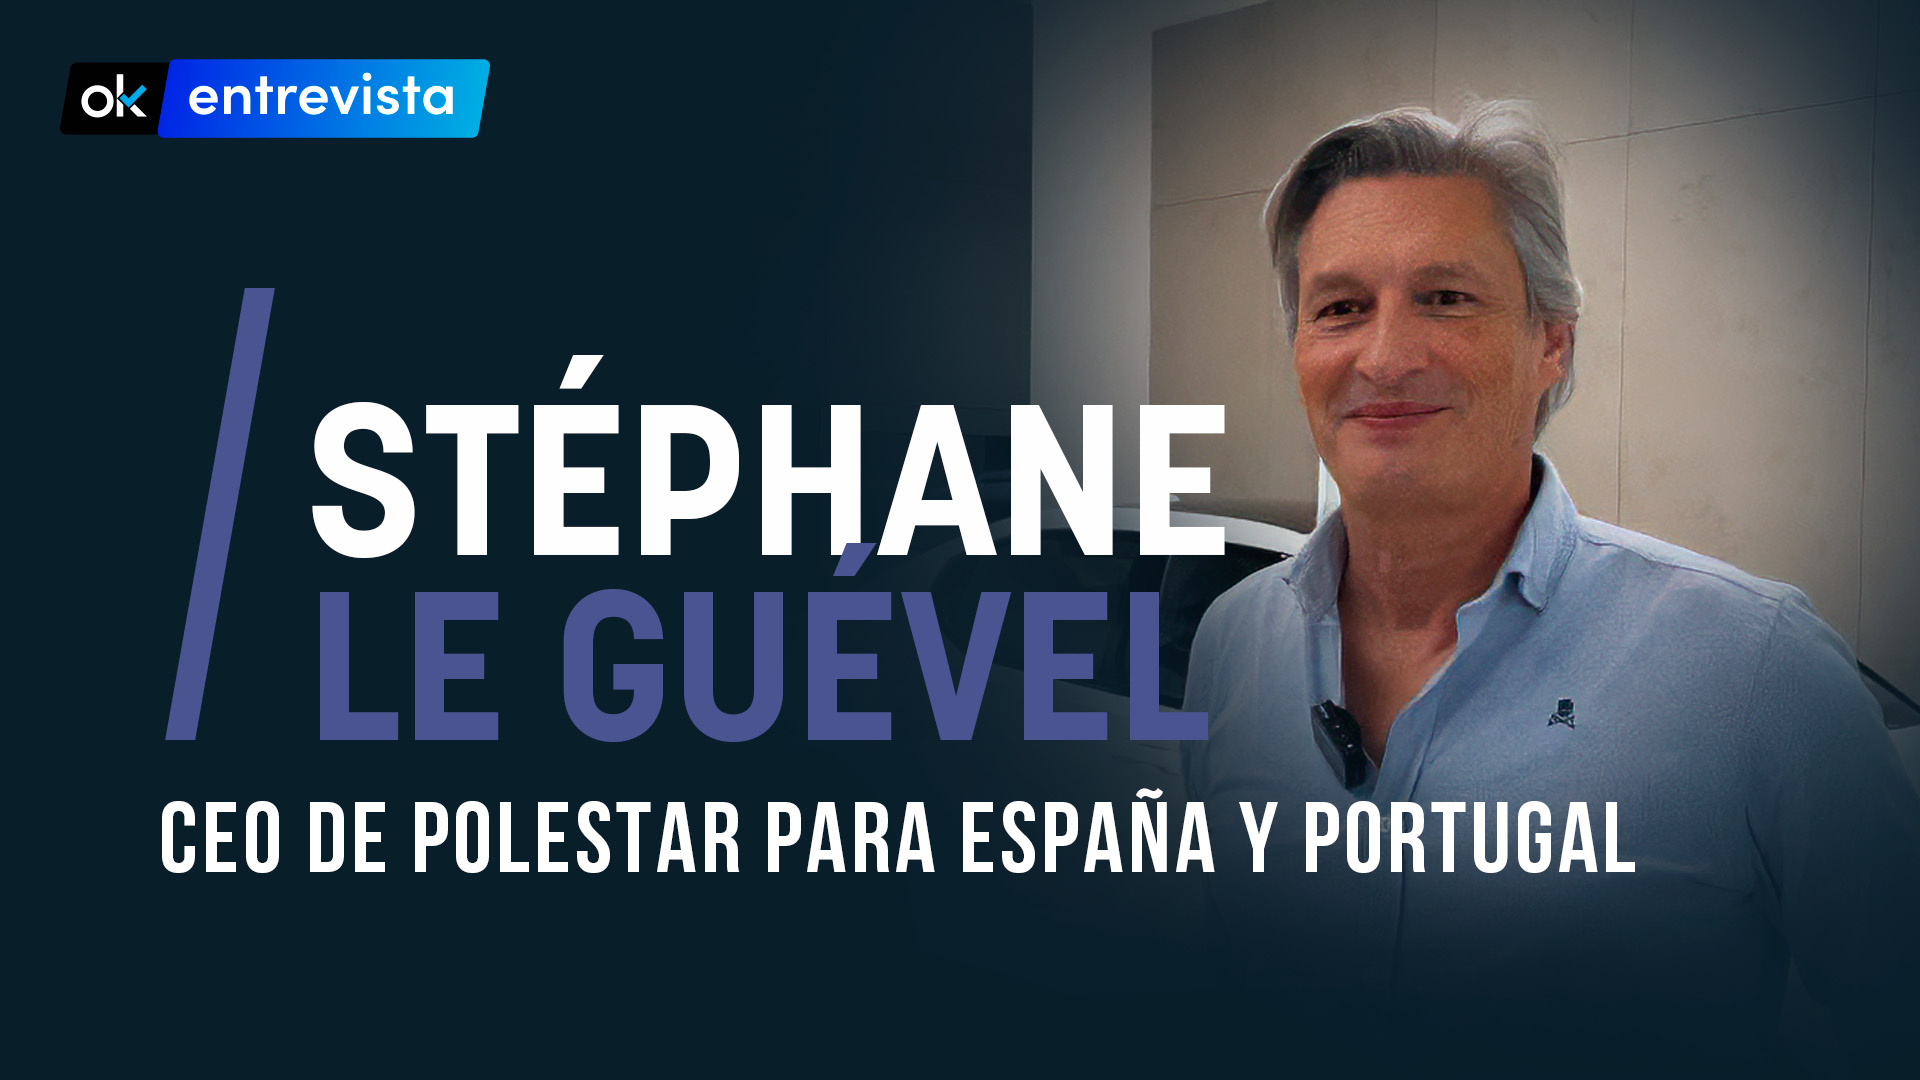 Stéphane Le Guével, CEO de Polestar para España y Portugal.